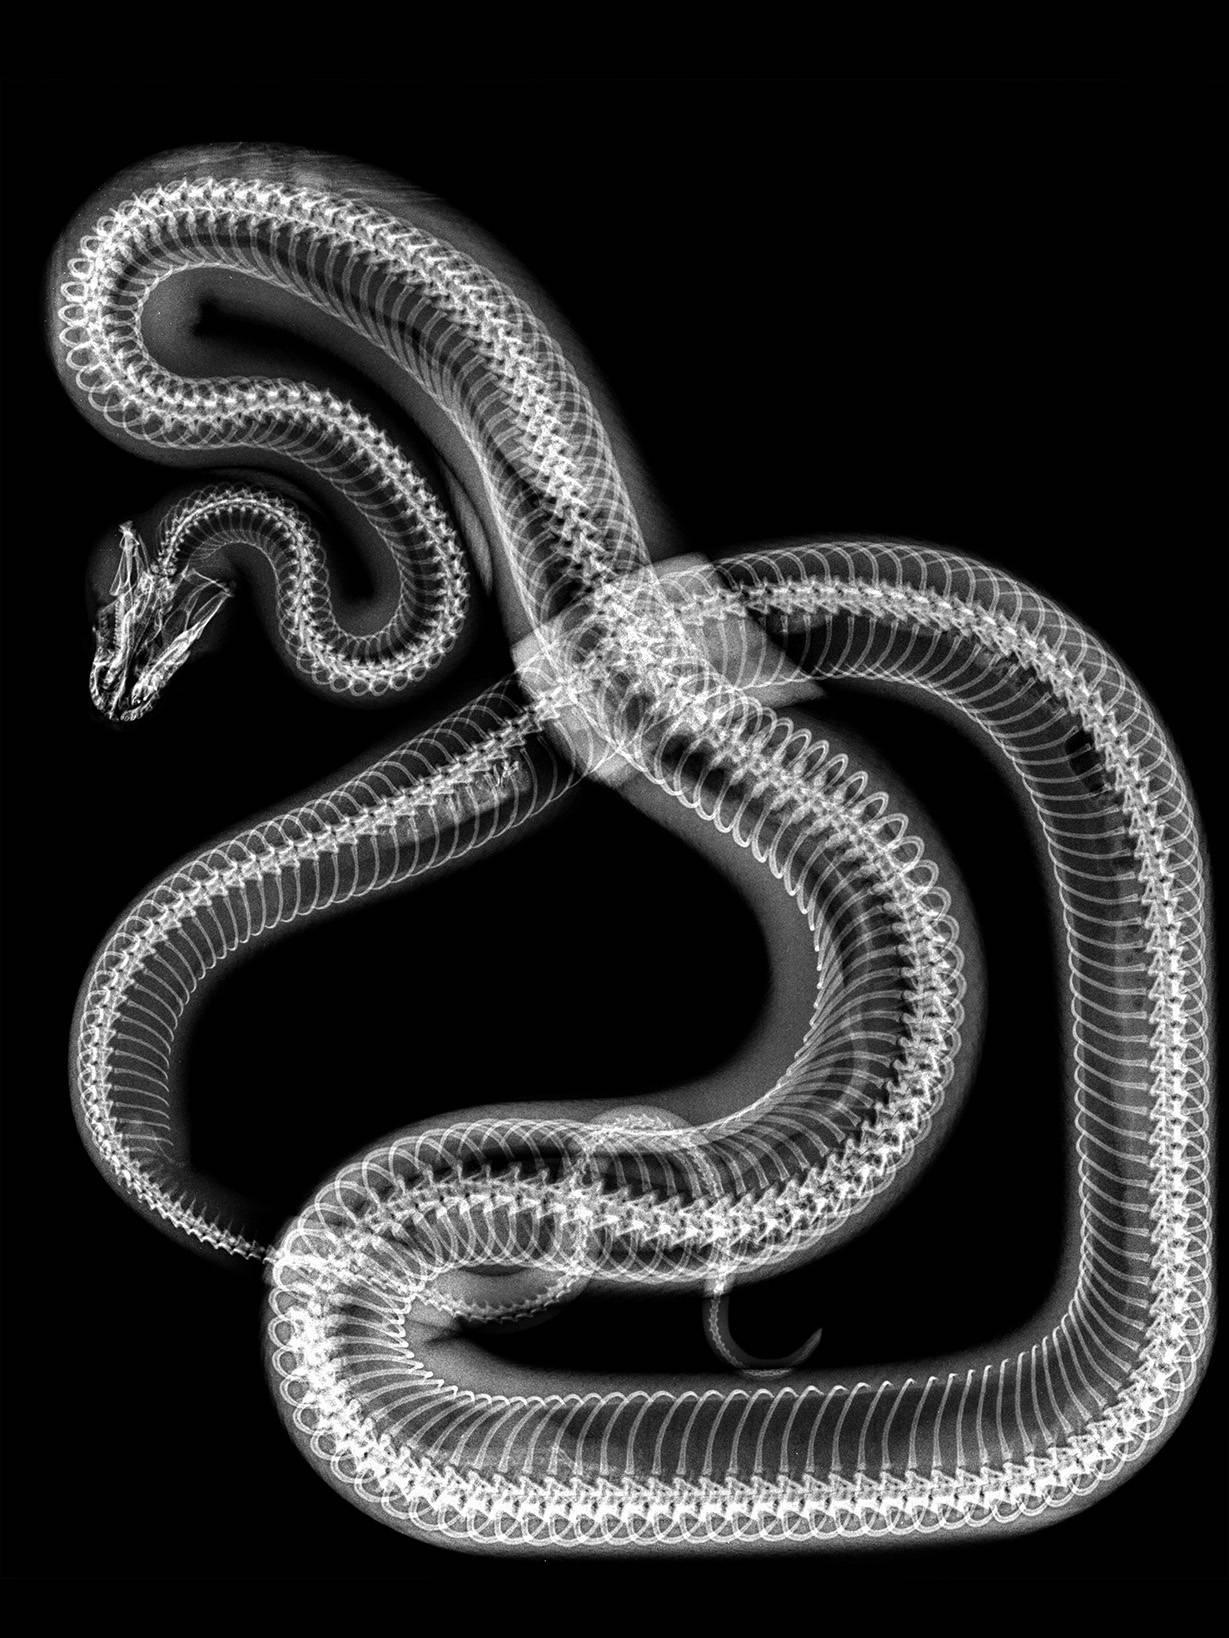 Steve Miller Black and White Photograph - Snake